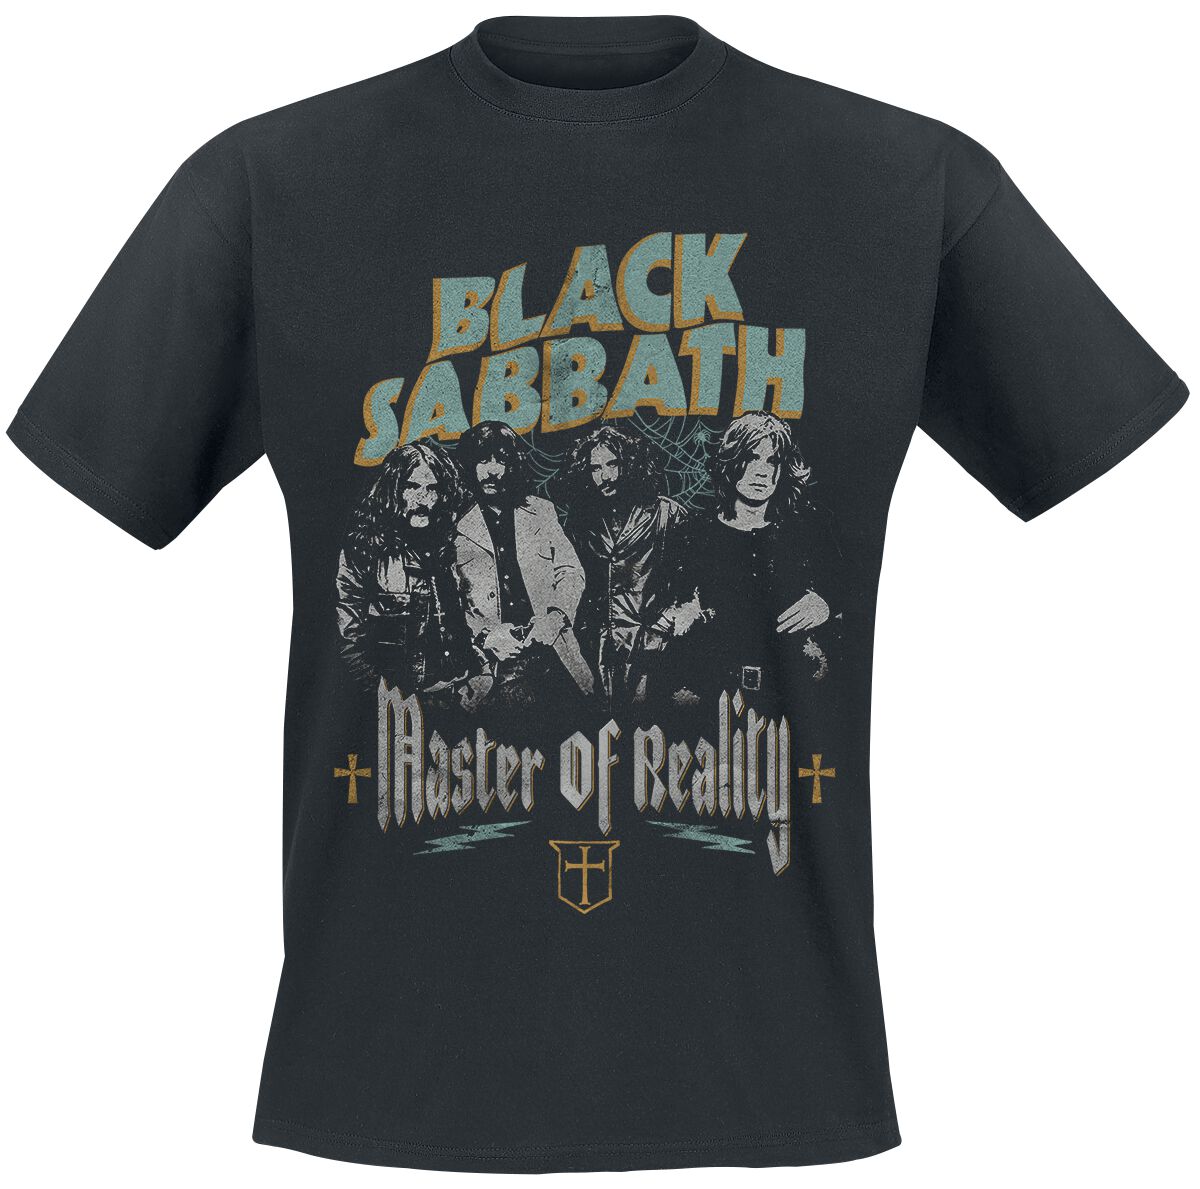 Black Sabbath T-Shirt - Master of reality - S bis 3XL - für Männer - Größe XXL - schwarz  - Lizenziertes Merchandise!